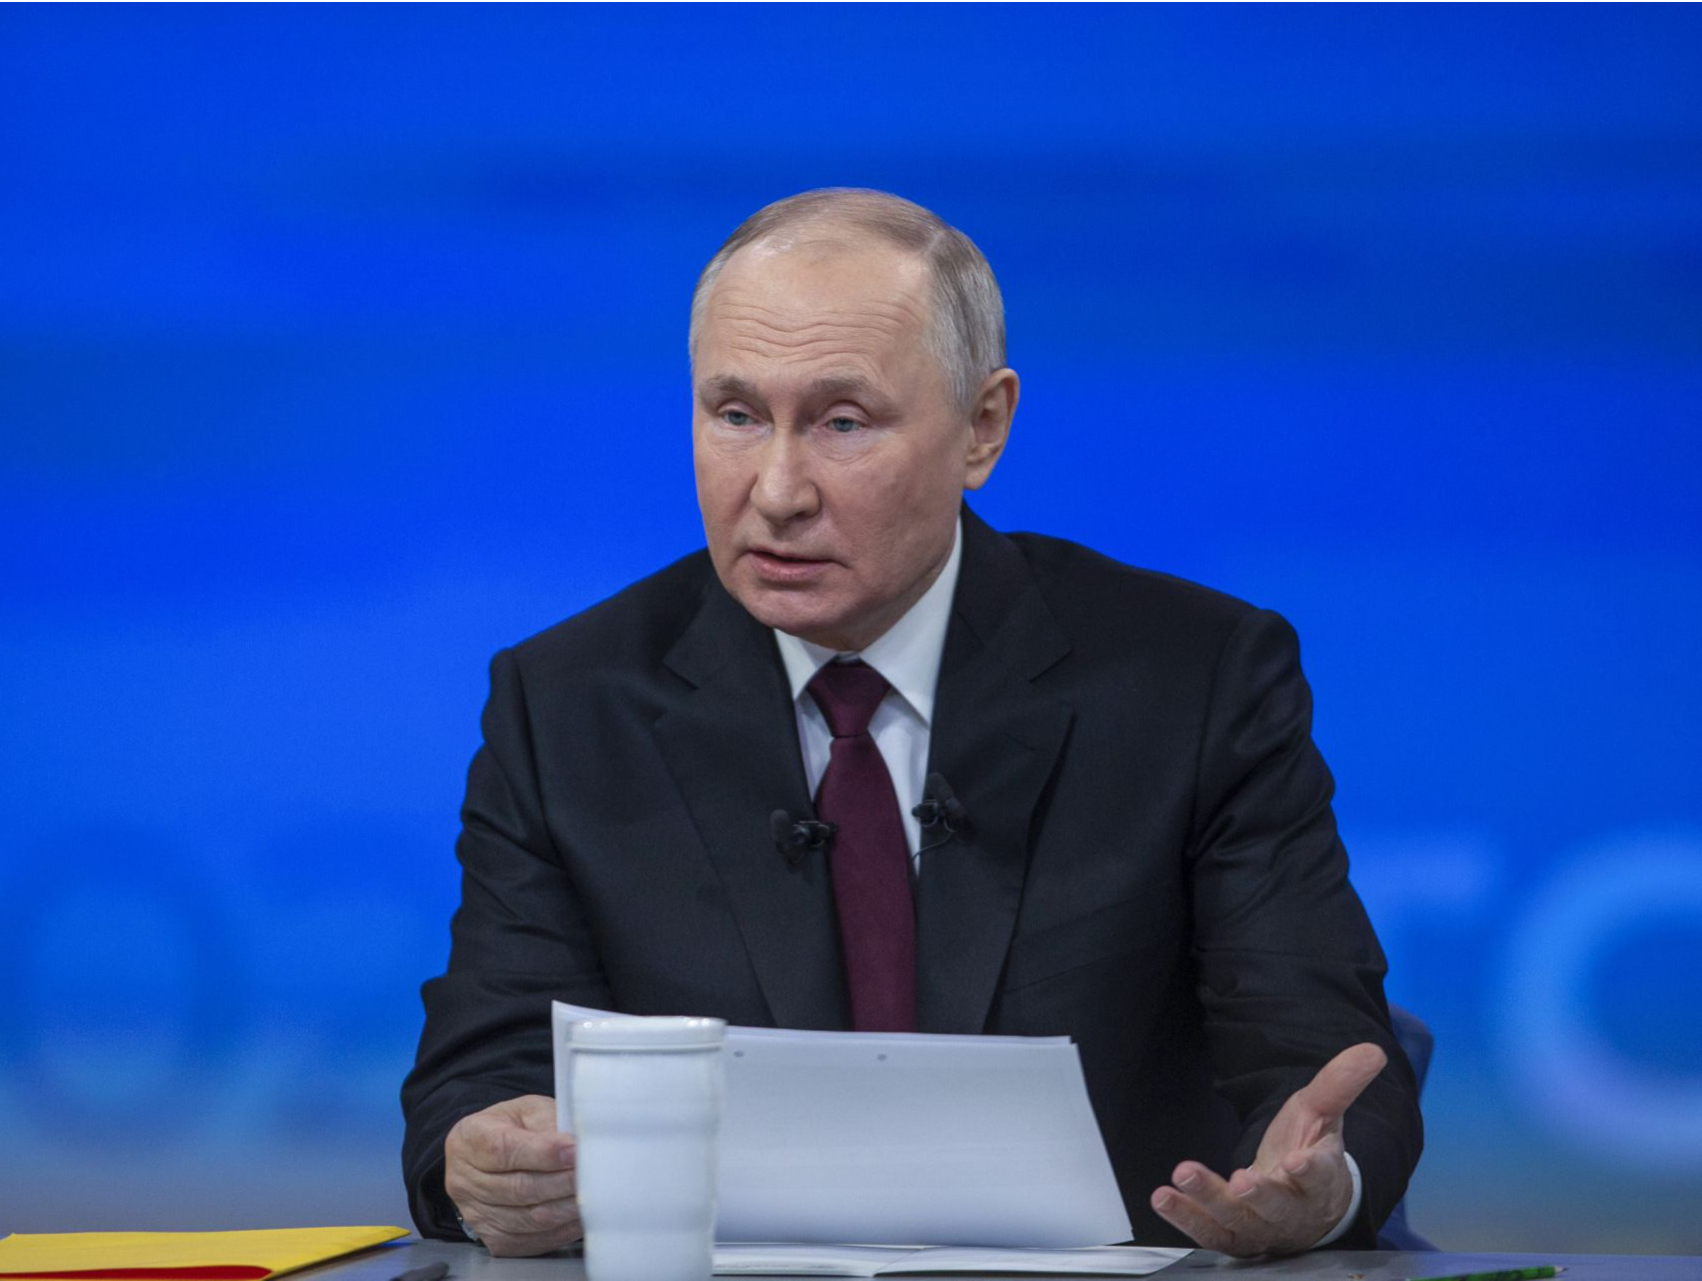 普京正式登记为俄罗斯下届总统候选人 